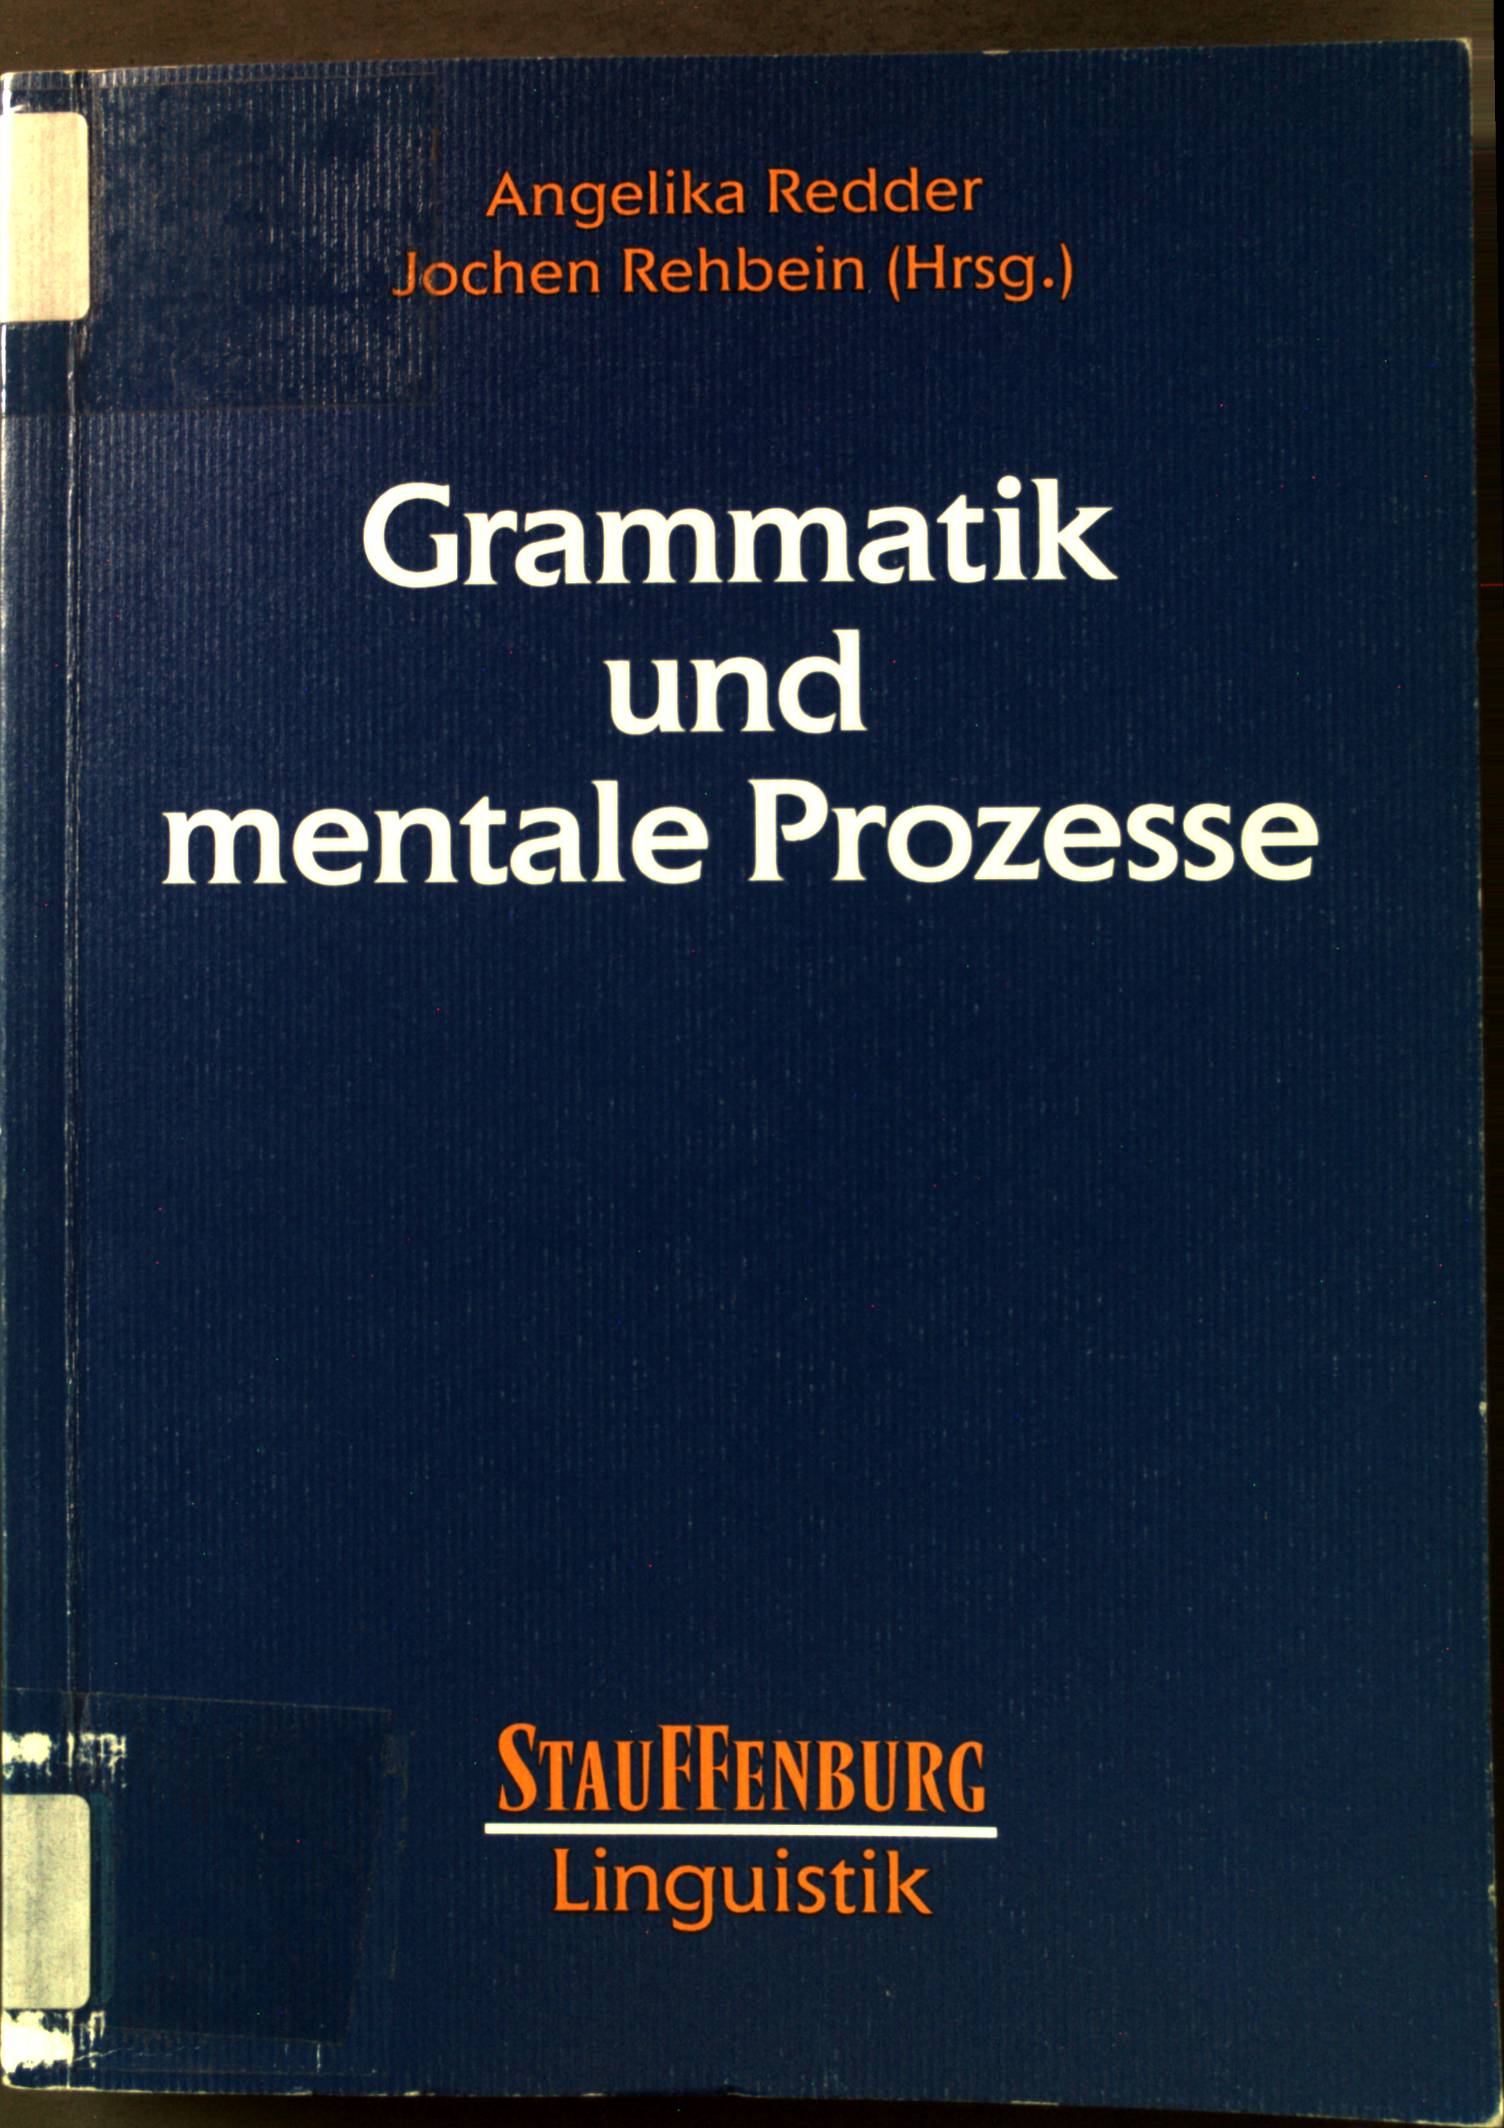 Grammatik und mentale Prozesse. Stauffenburg Linguistik 7. - Redder, Angelika (Herausgeber)